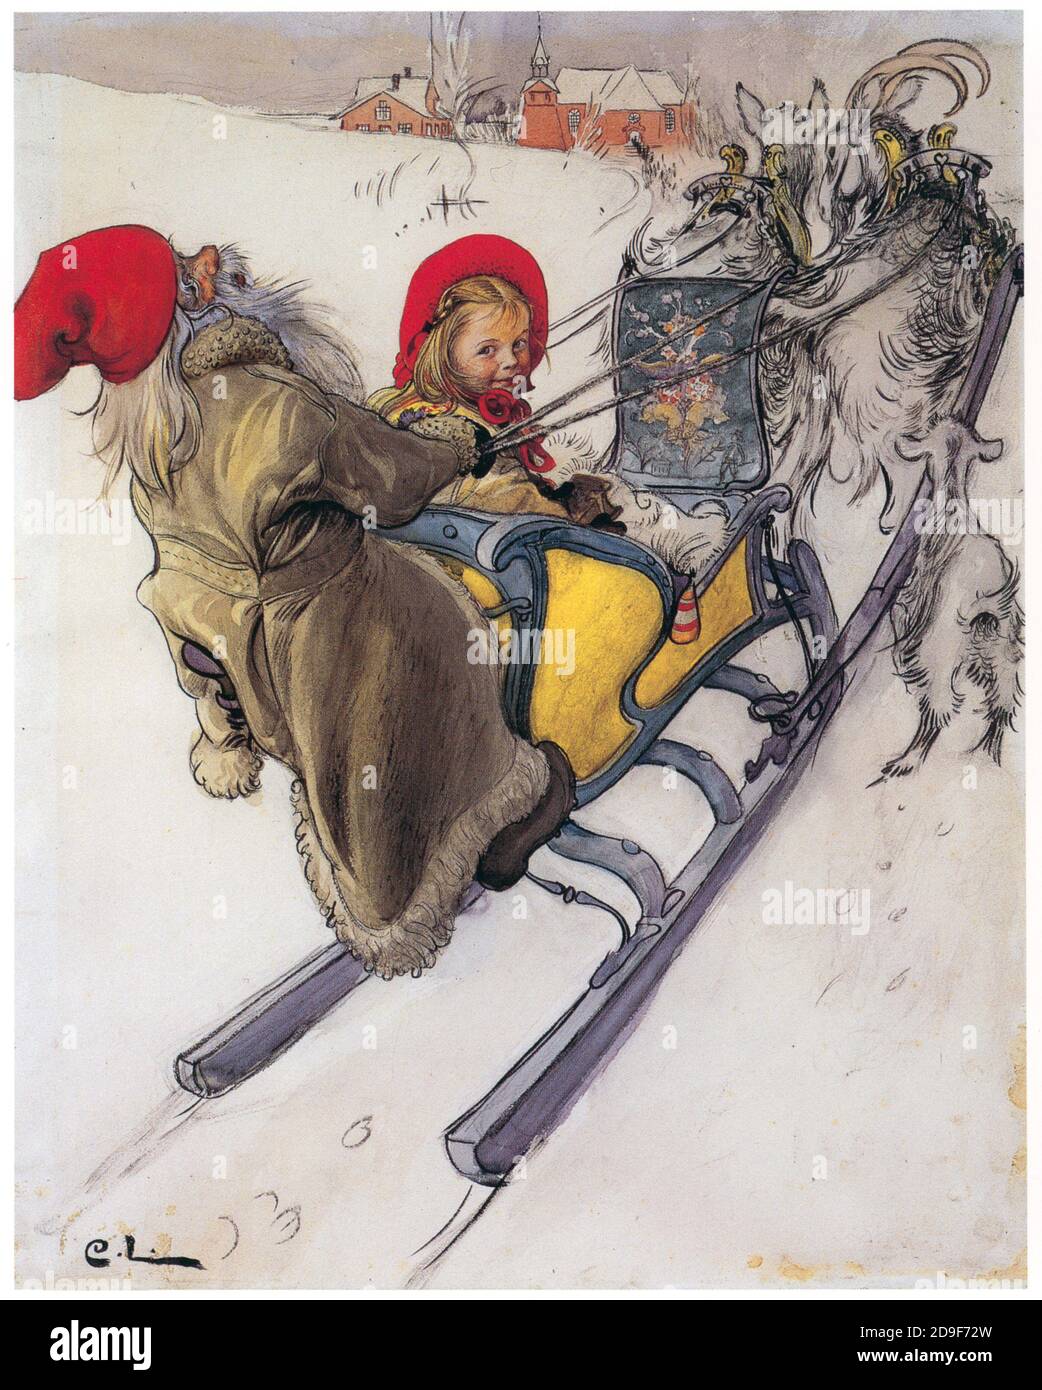 Carl Larsson. Ilustraciones de Navidad. Navidad de estilo antiguo de una manera vintage. Foto de stock